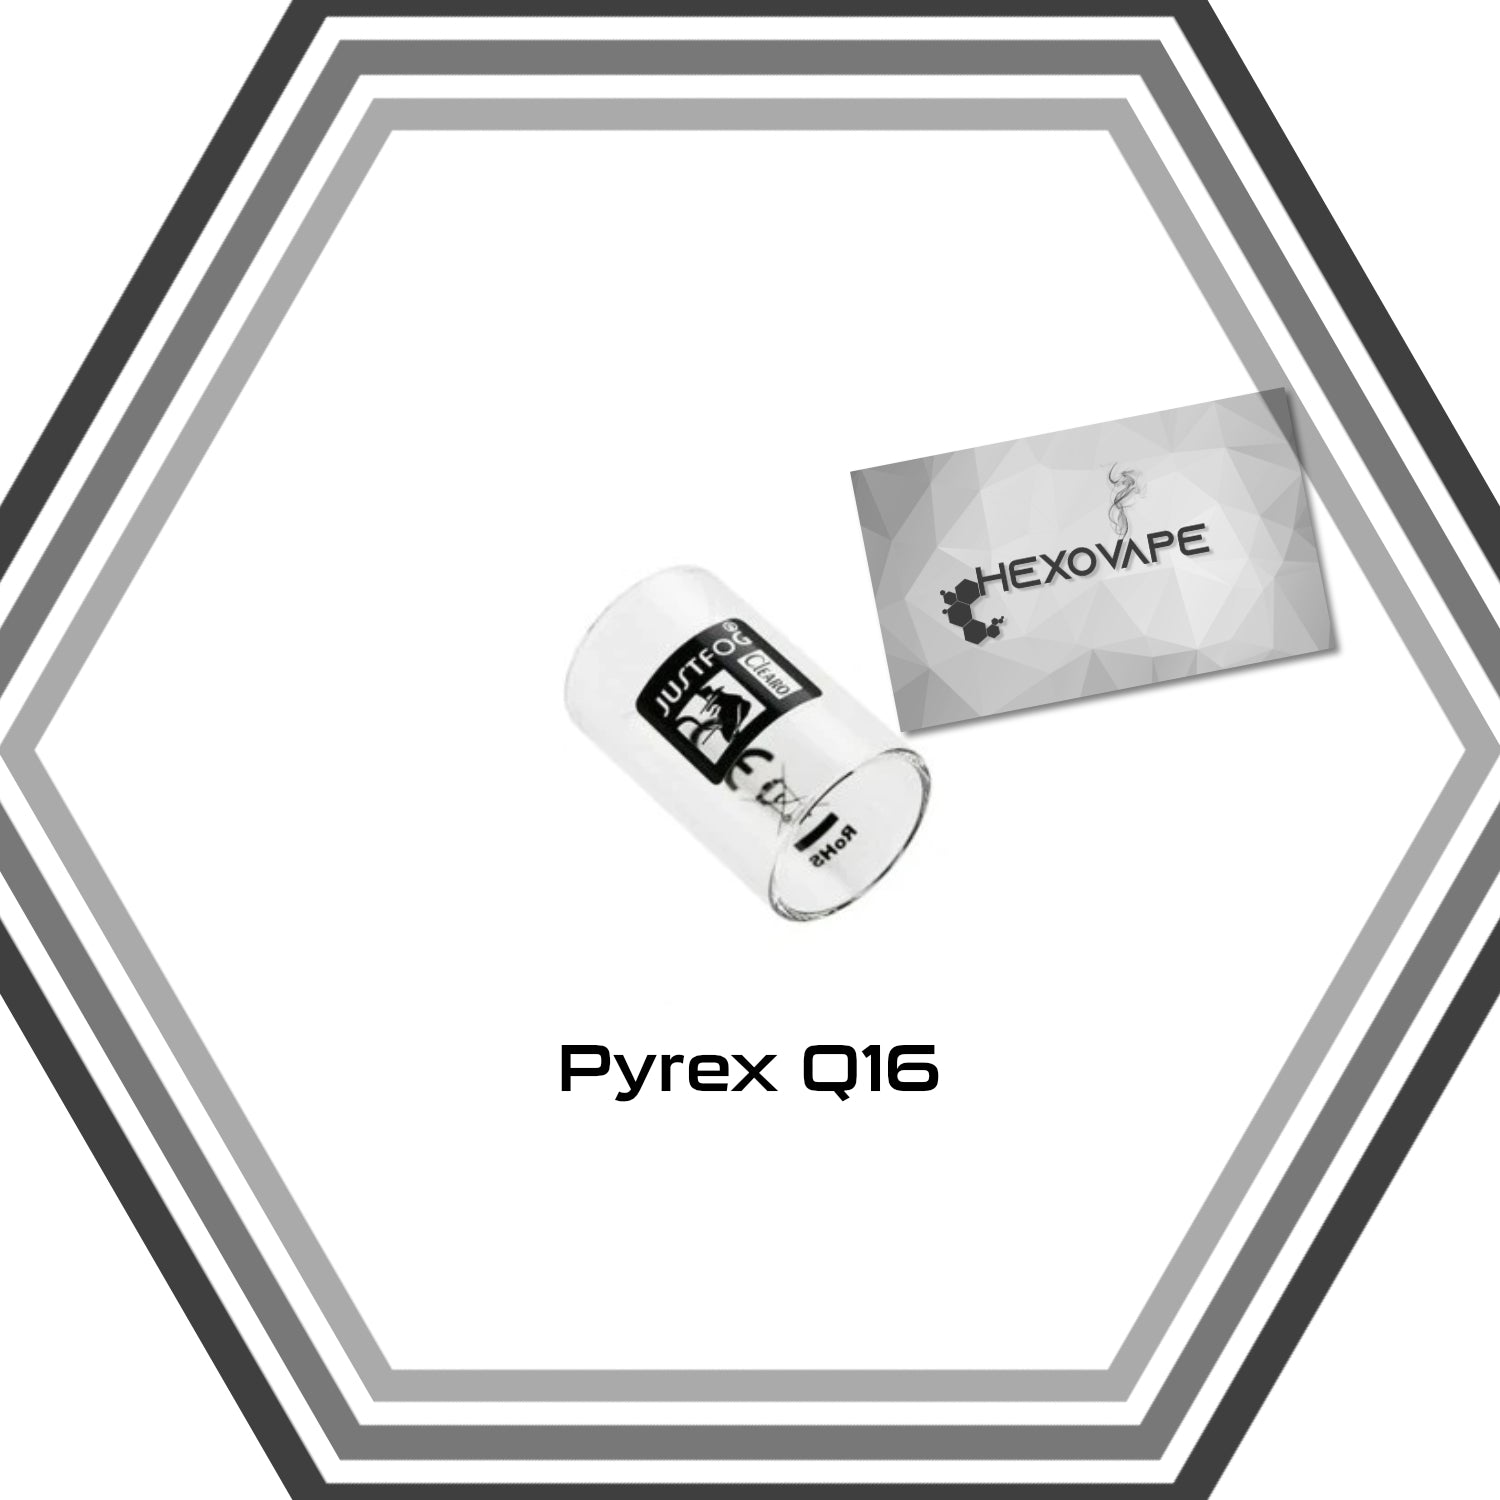 Pyrex Q16 - Justfog - Hexovape.com